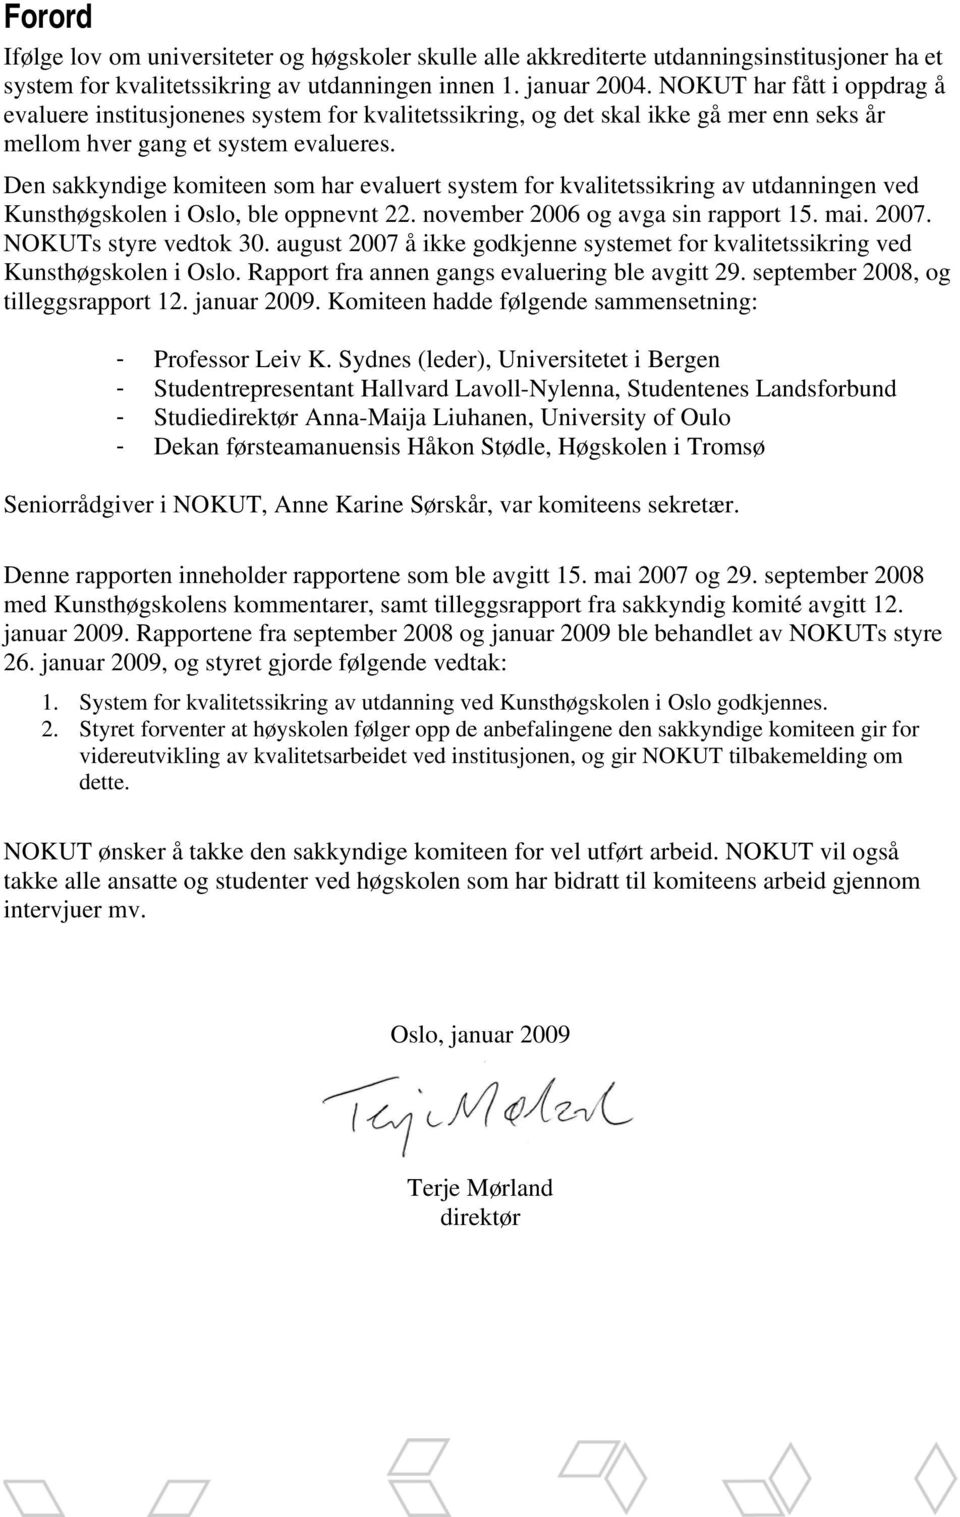 Den sakkyndige komiteen som har evaluert system for kvalitetssikring av utdanningen ved Kunsthøgskolen i Oslo, ble oppnevnt 22. november 2006 og avga sin rapport 15. mai. 2007. NOKUTs styre vedtok 30.